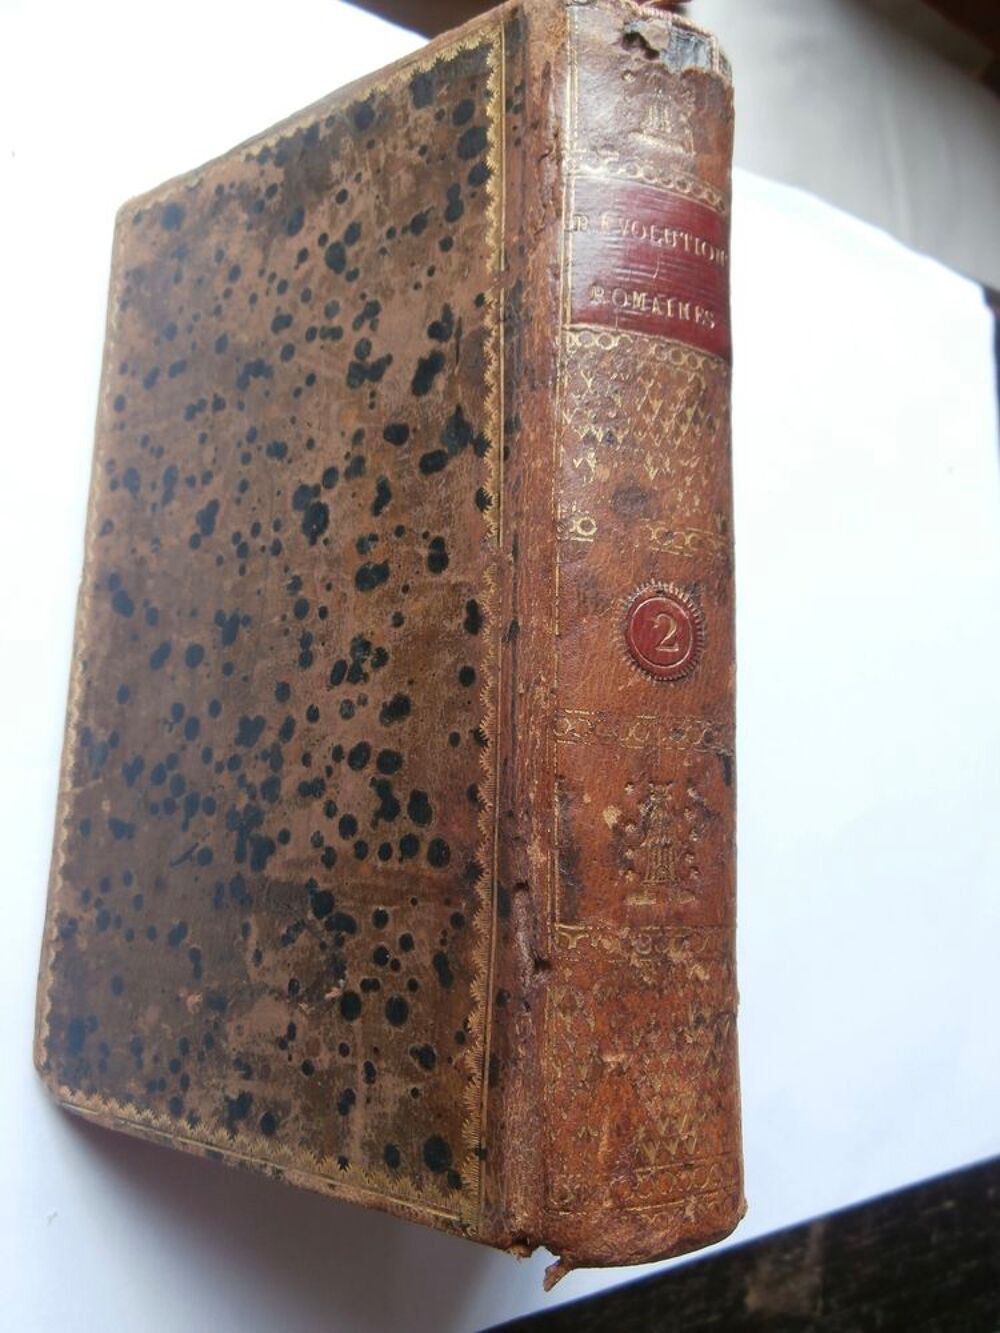 R&Eacute;VOLUTIONS ROMAINES . LA R&Eacute;PUBLIQUE ROMAINE.2. VERTOT 1818 Livres et BD